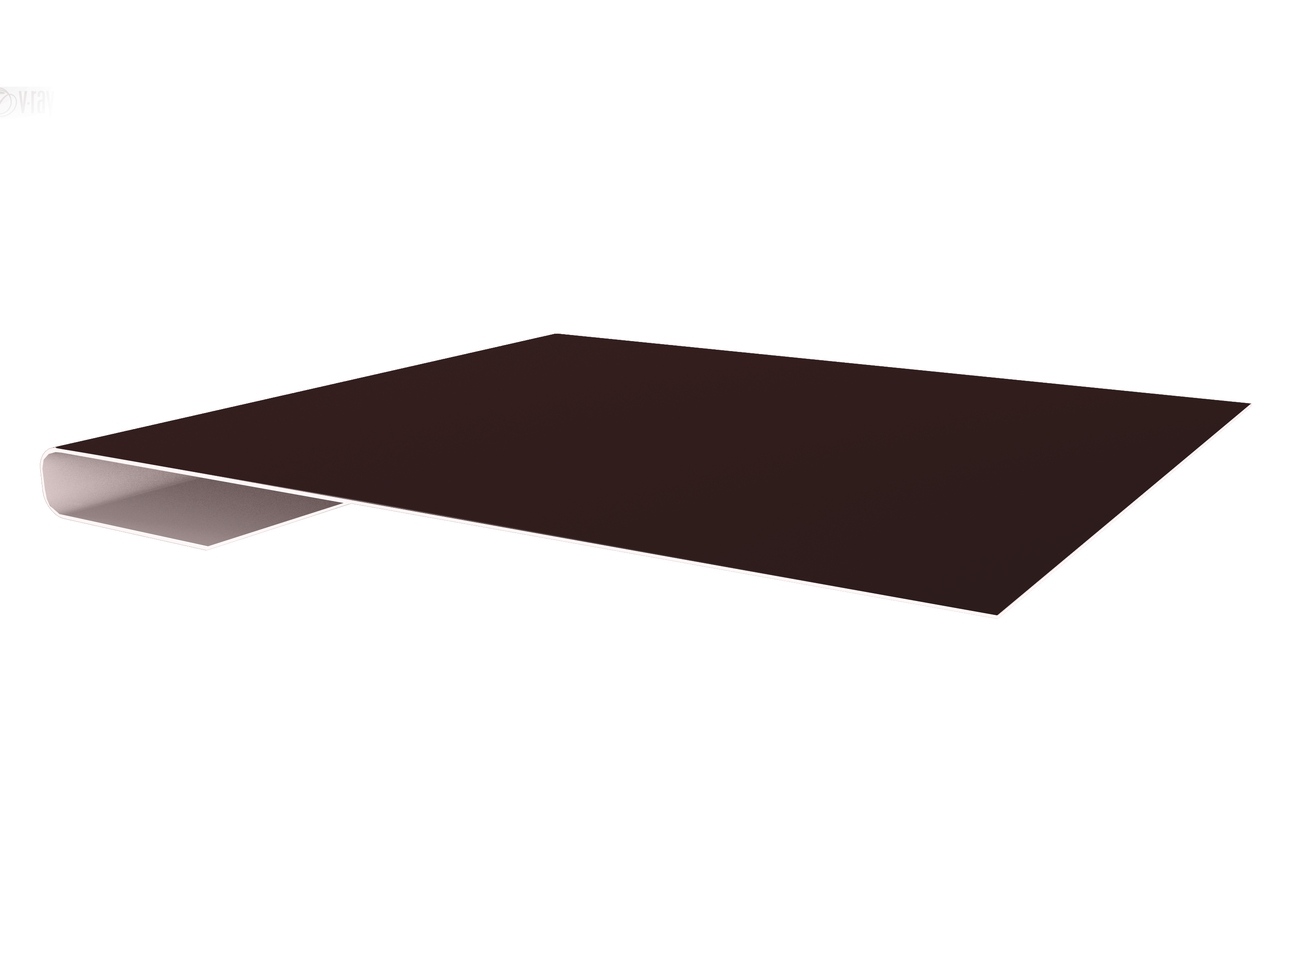 Планка завершающая простая 65мм GreenCoat Pural Matt RR 887 шоколадно-коричневый (RAL 8017 шоколад)